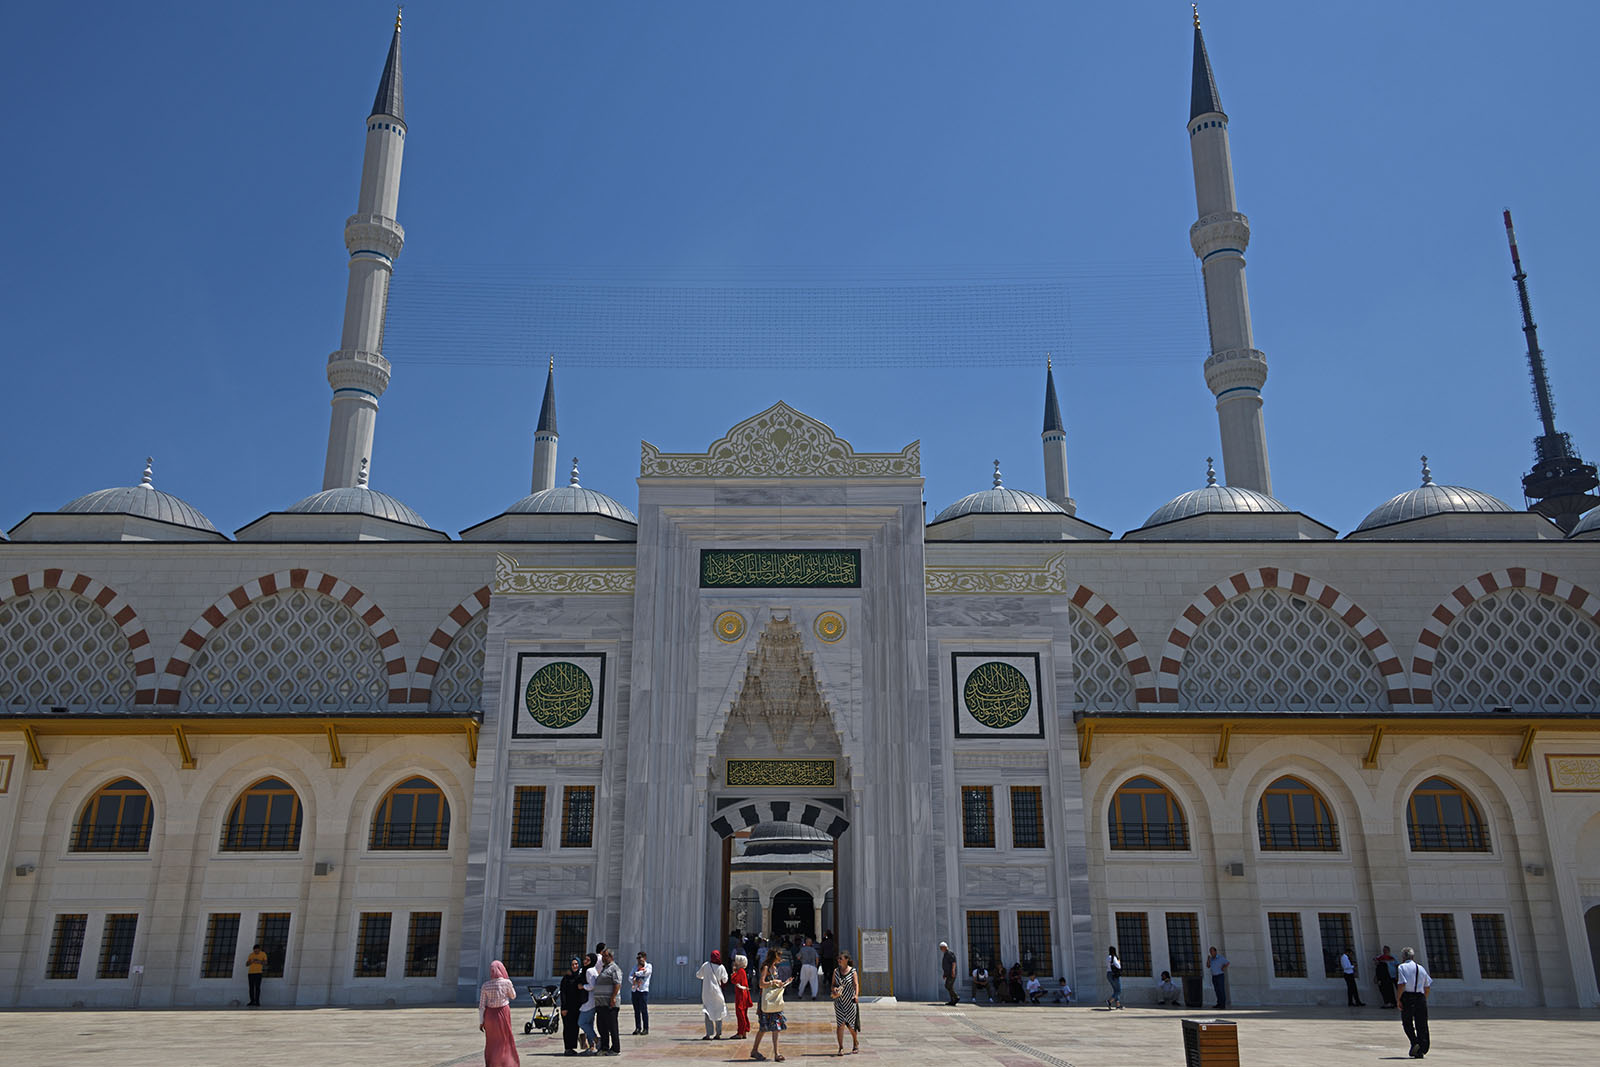 Istanbul big camlica mosque june 2019 2036 dosseman wikimedia